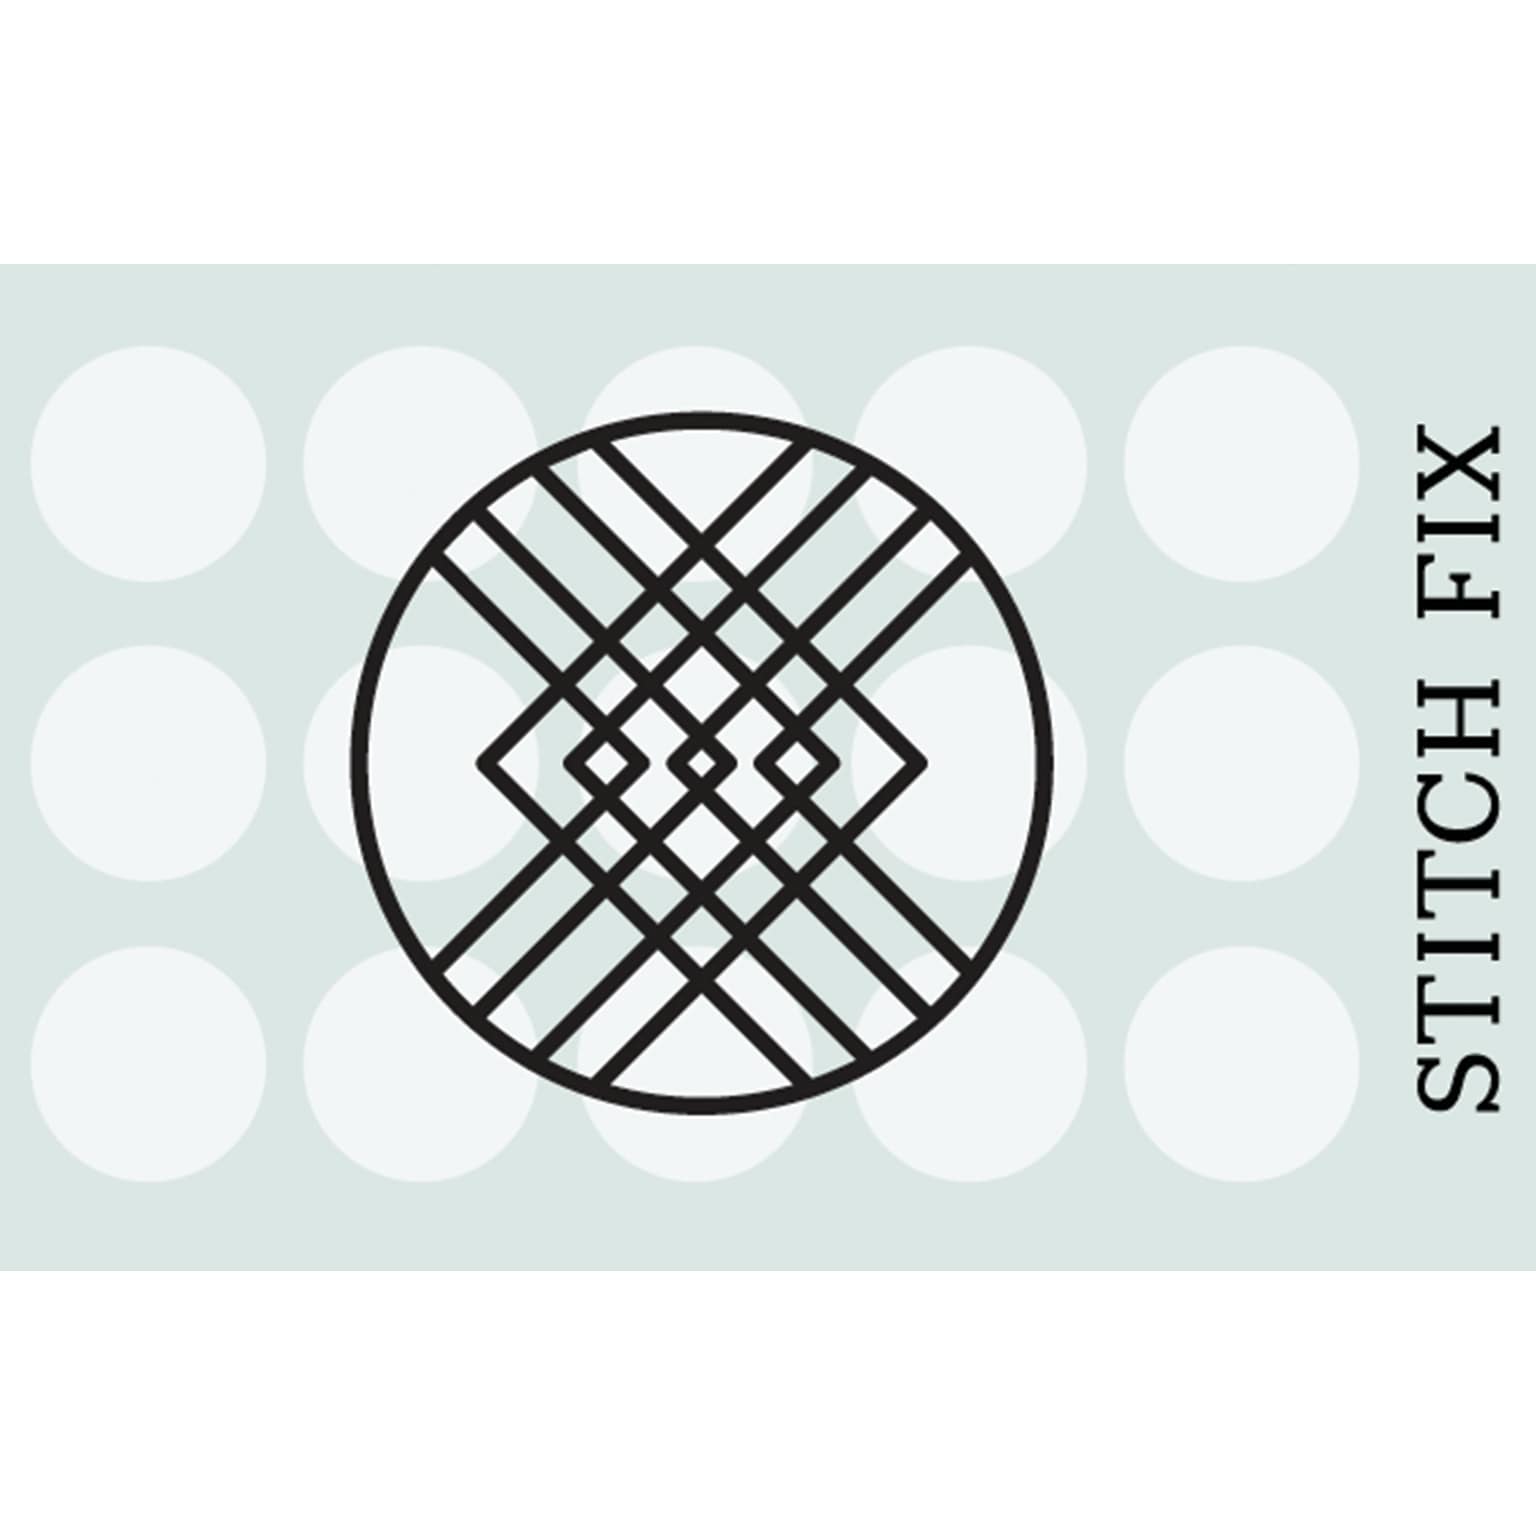 Stitch Fix $100 Gift Card